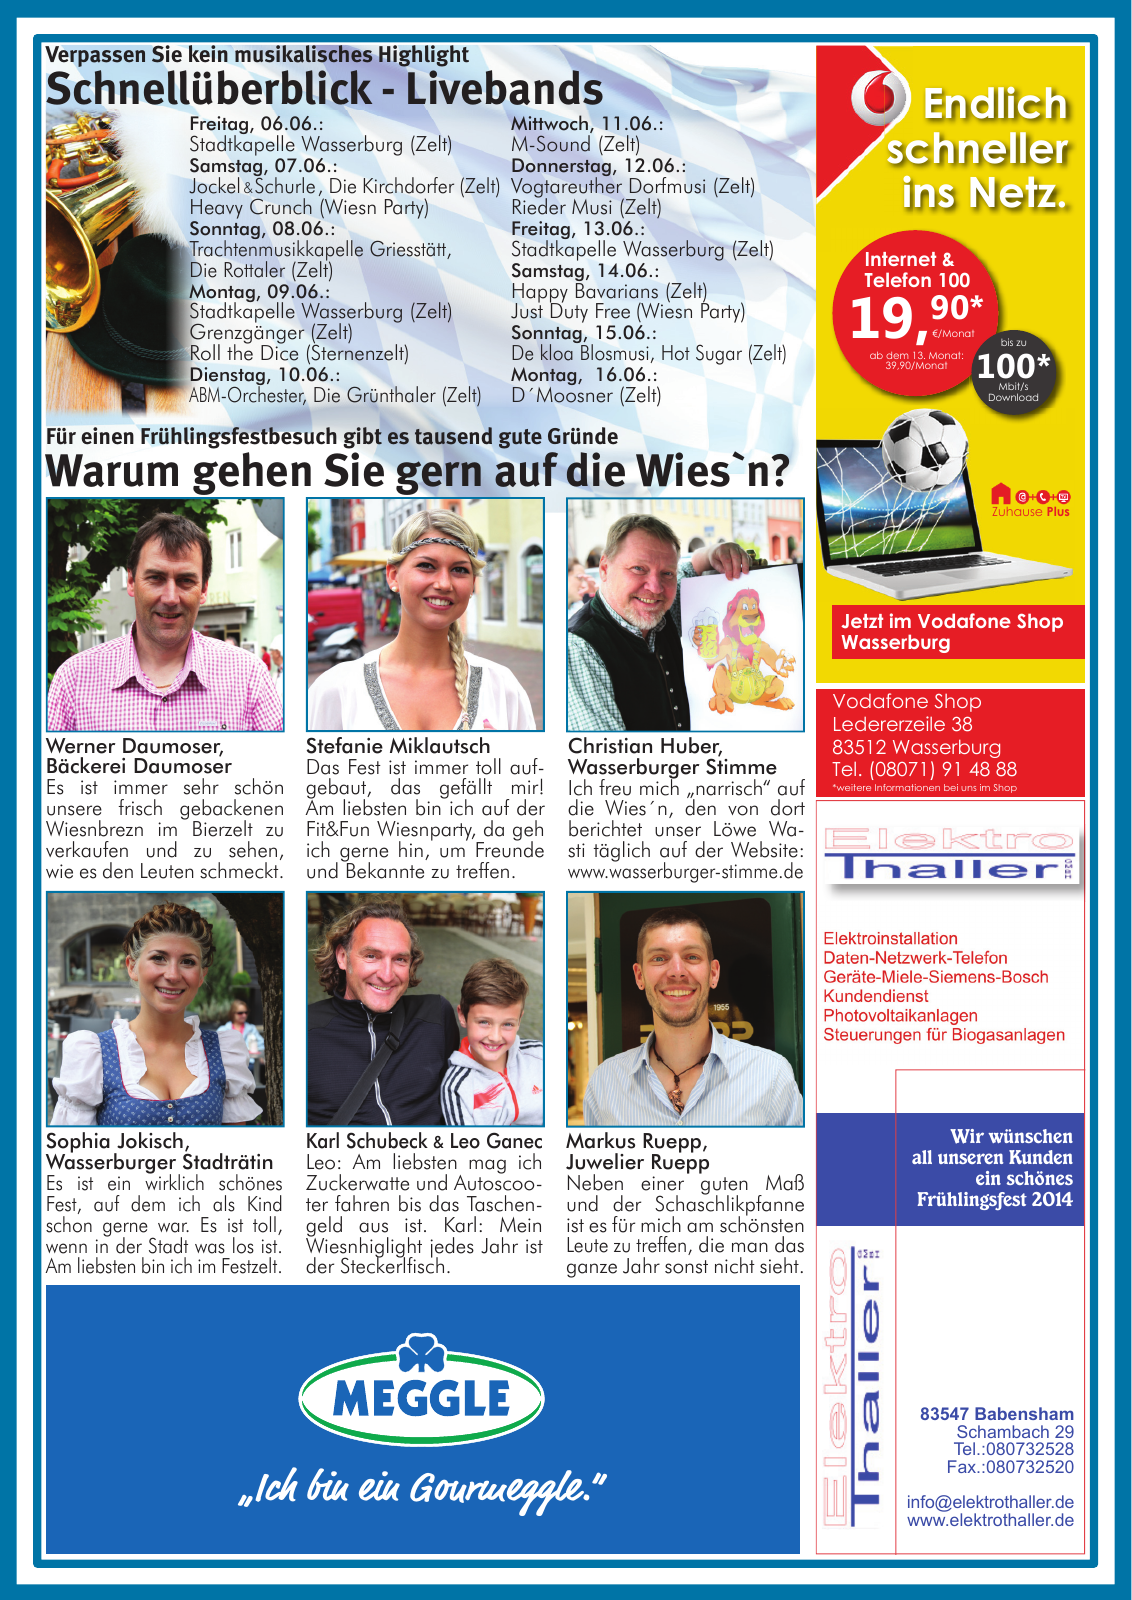 Vorschau Wasserburger Wiesnblattl 2014 Ausgabe 1 Seite 3